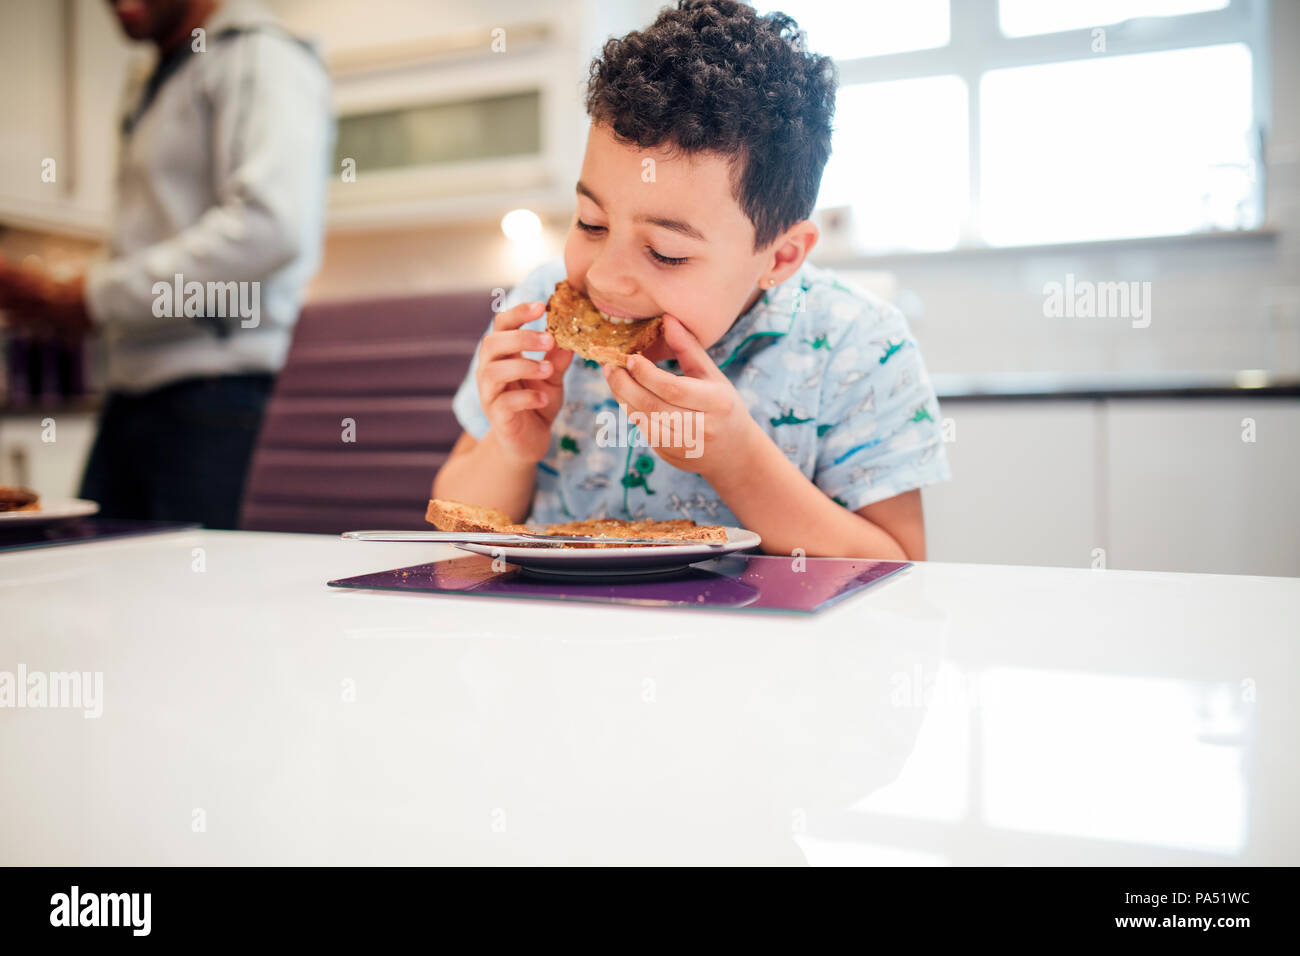 Little Boy sta godendo di qualche toast con marmellata per colazione a casa. Foto Stock